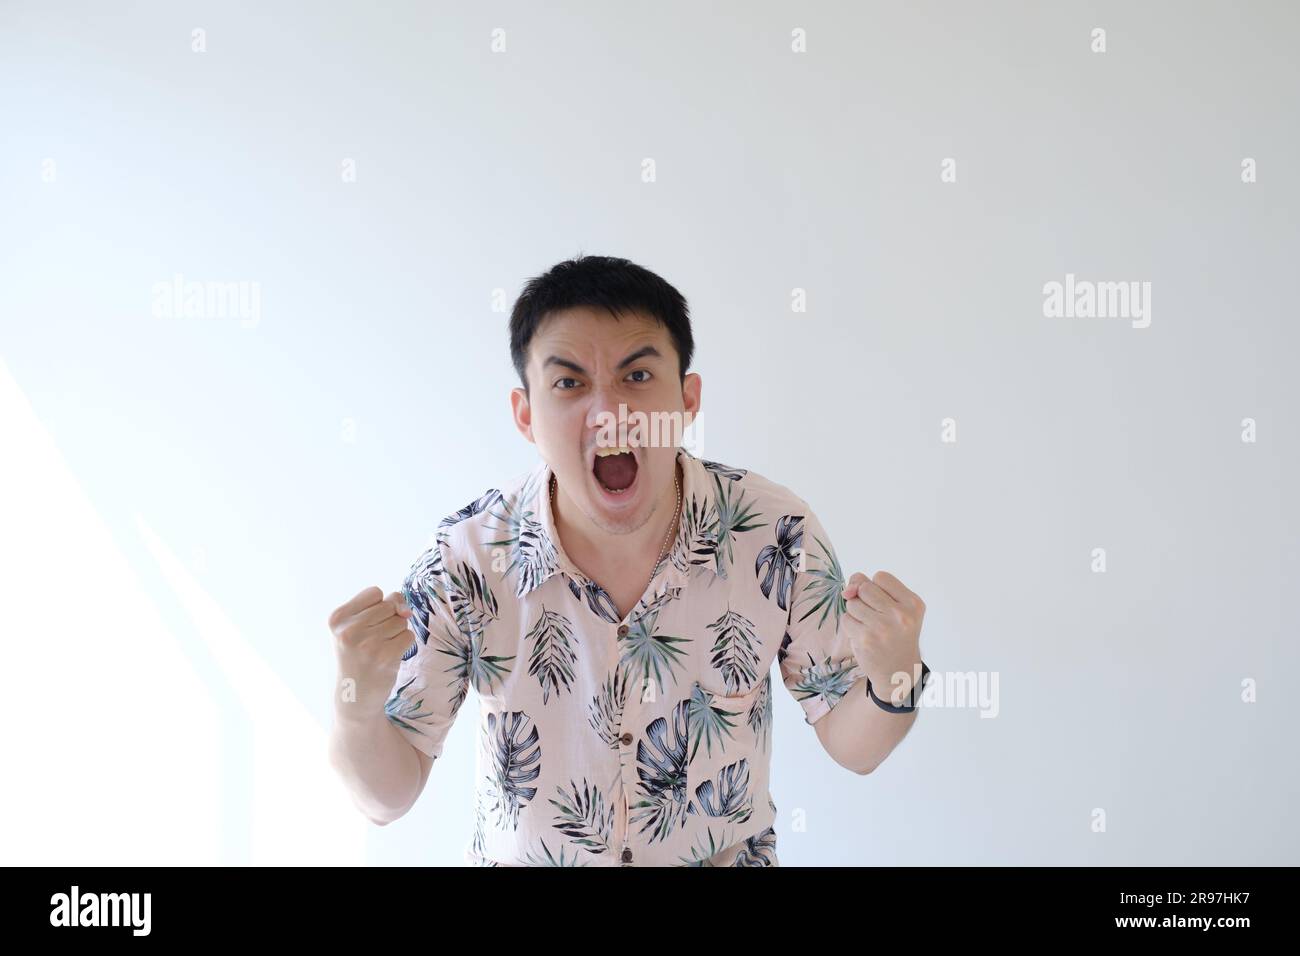 Un giovane asiatico che indossa una camicia rosa con motivi tropicali e uno smartwatch sul polso sinistro si sente felice ed eccitato e mostra la sua espressione Foto Stock